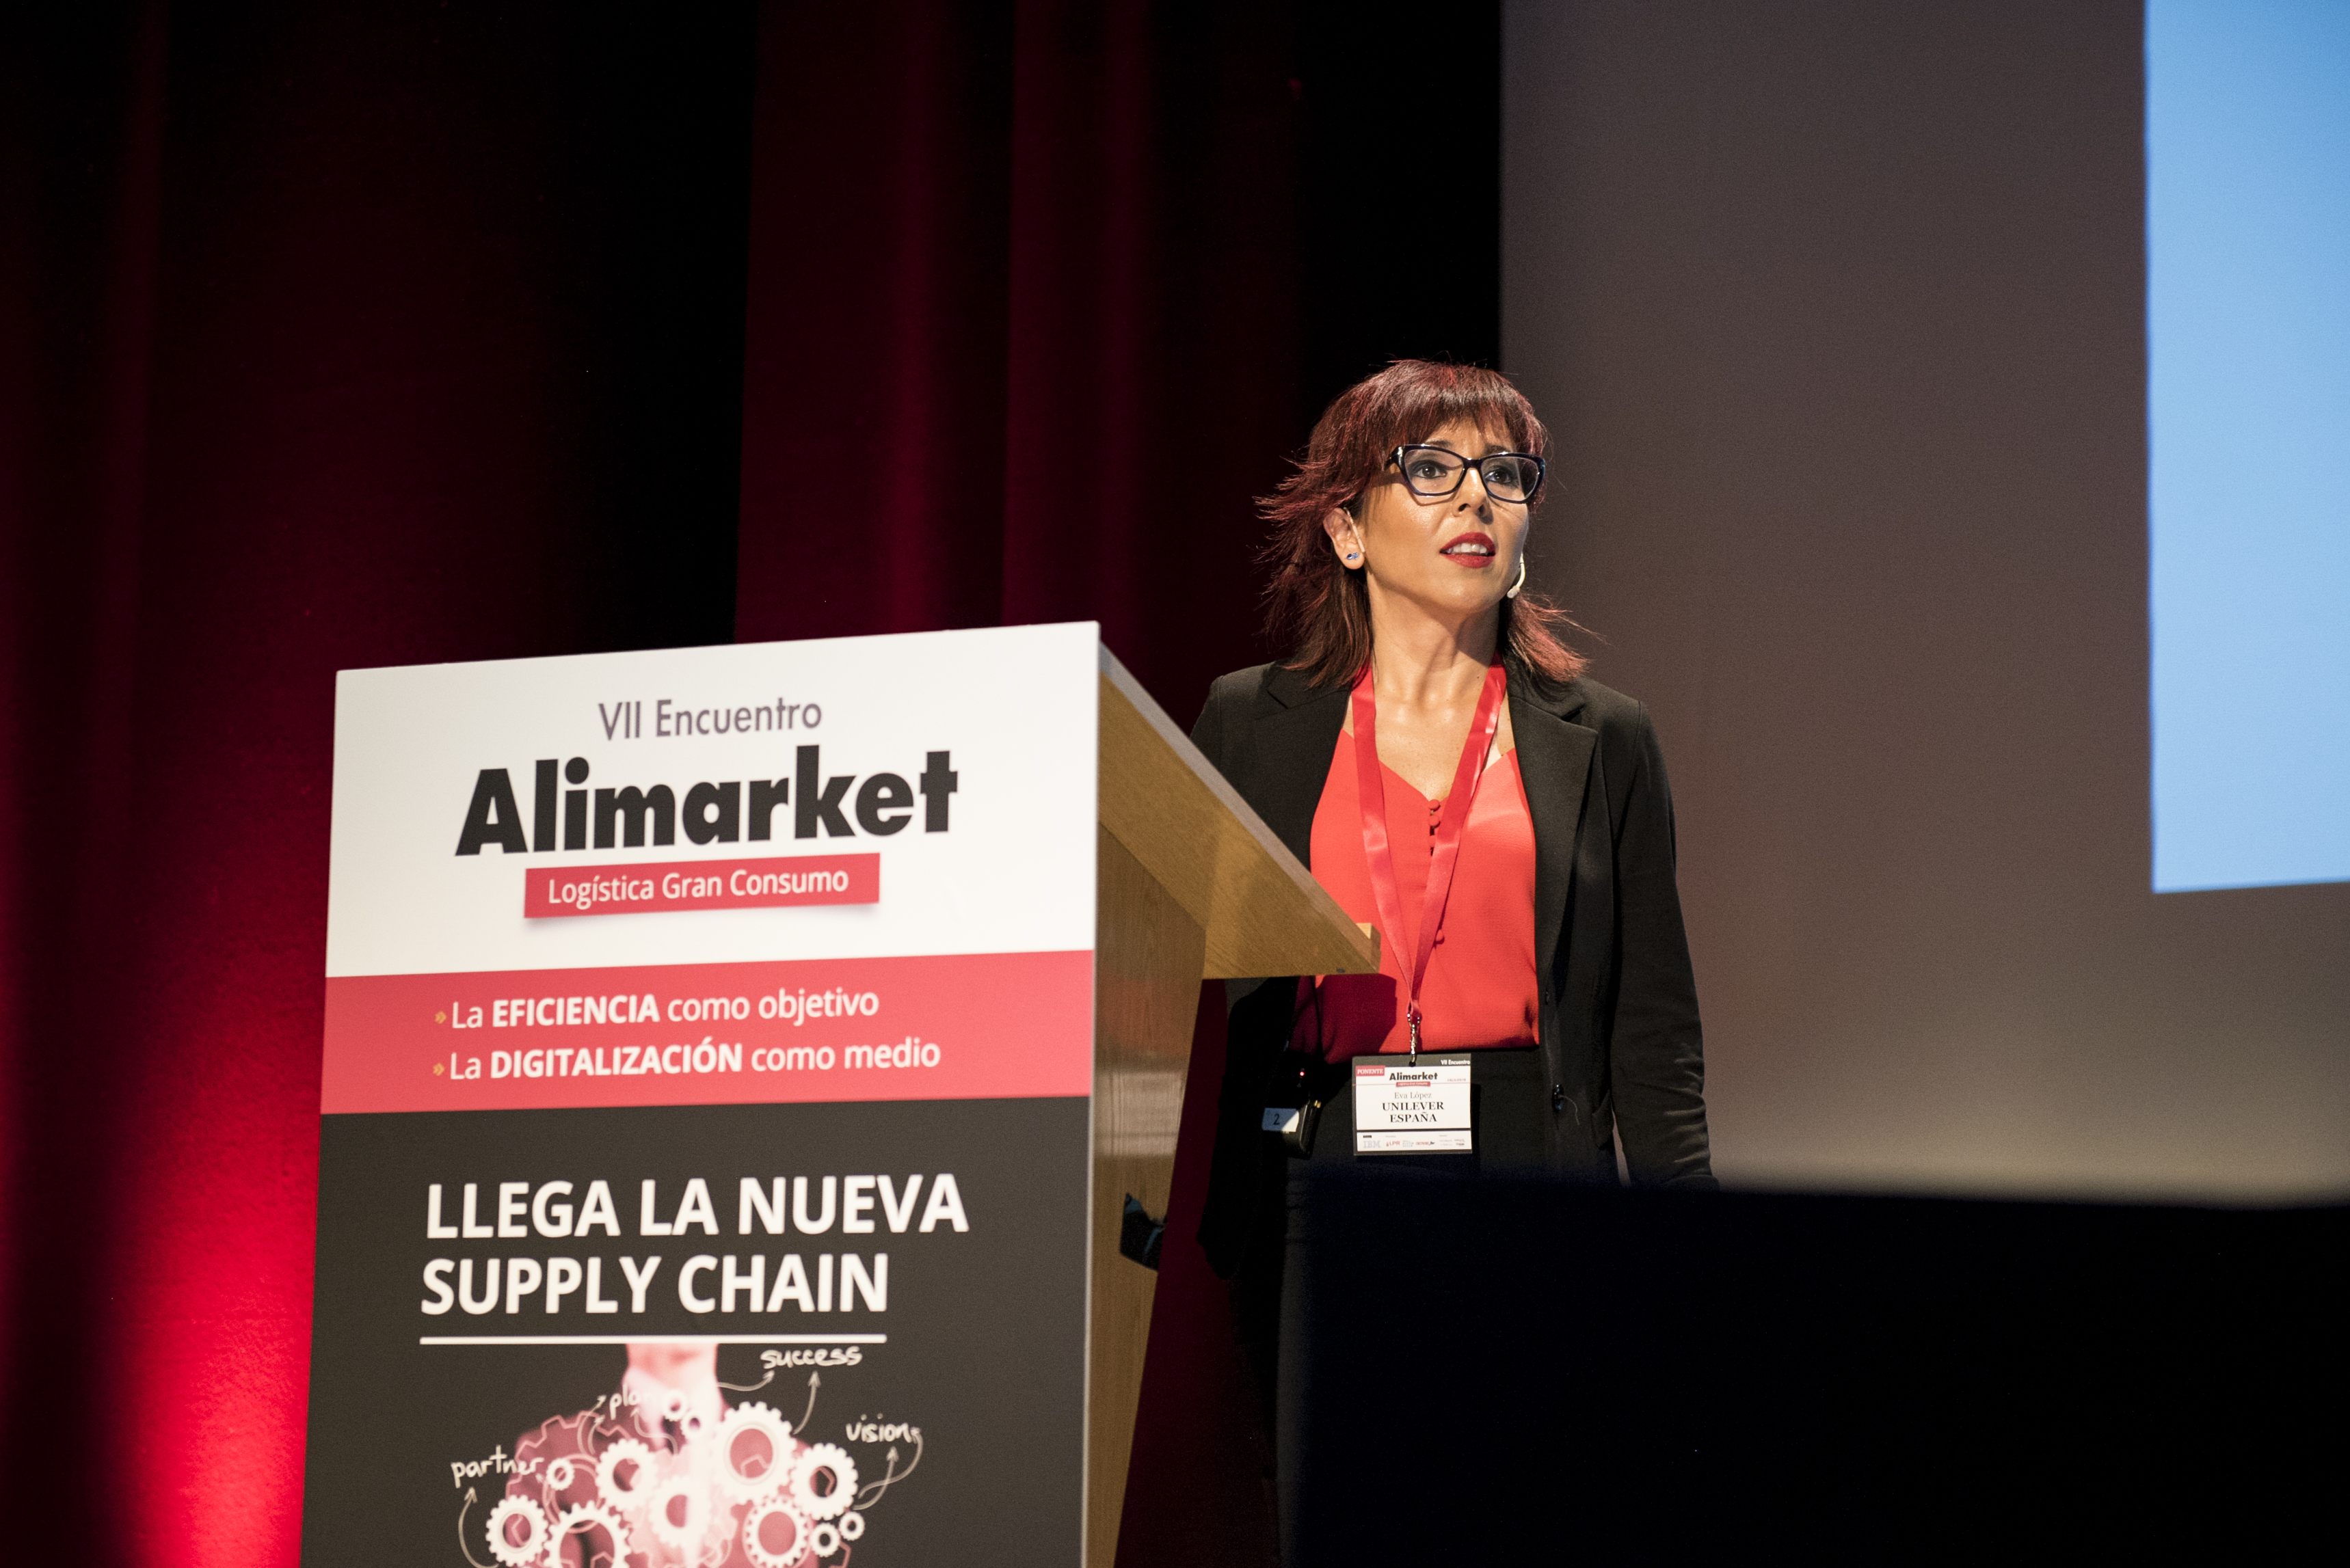 VII Encuentro Alimarket Logística Gran Consumo: Llega la nueva supply chain